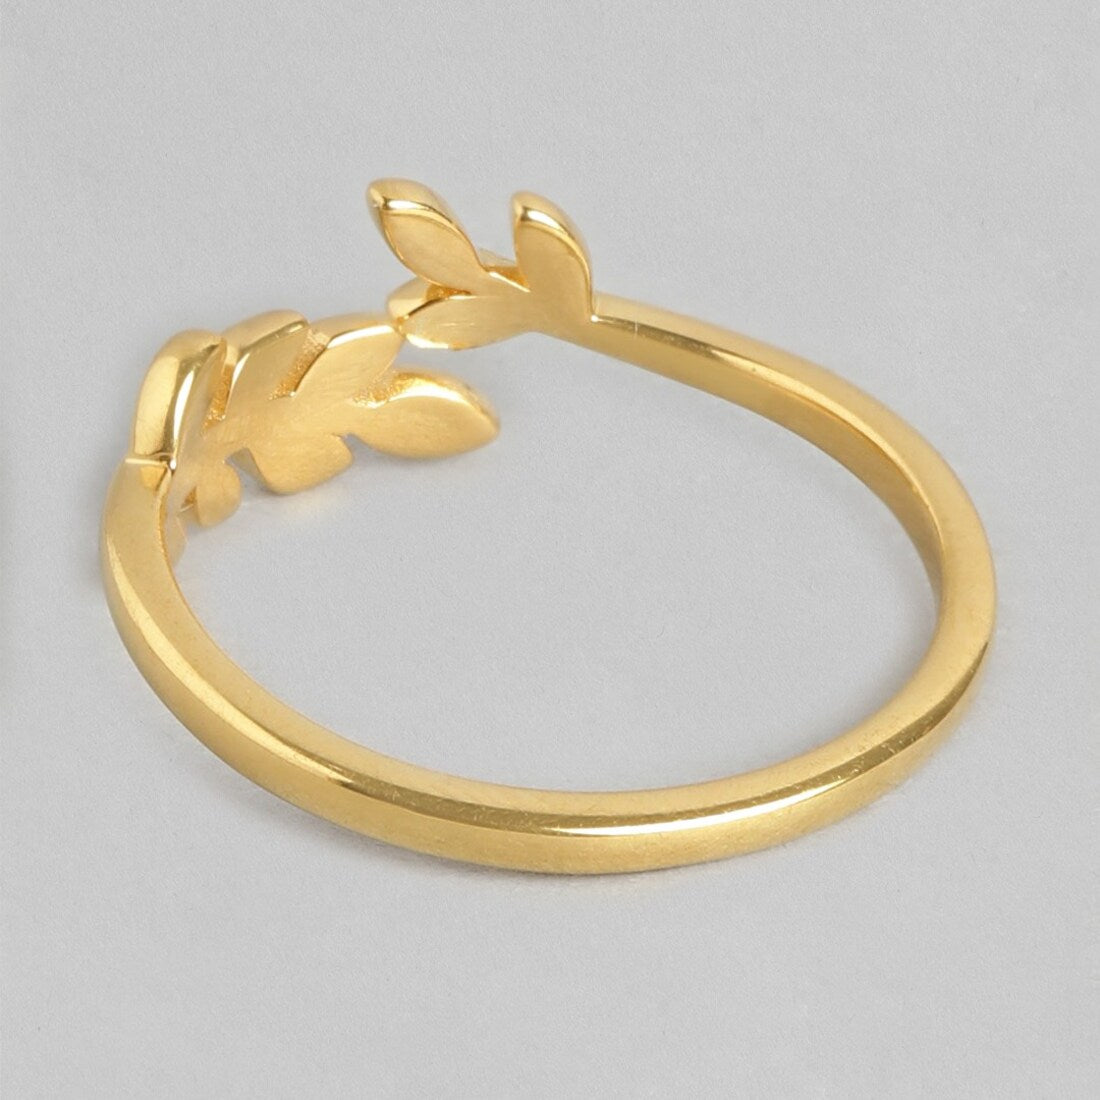 Golden Leaf Adjustable Gold-Plated 925 Sterling Silver Ring (Adjustable)